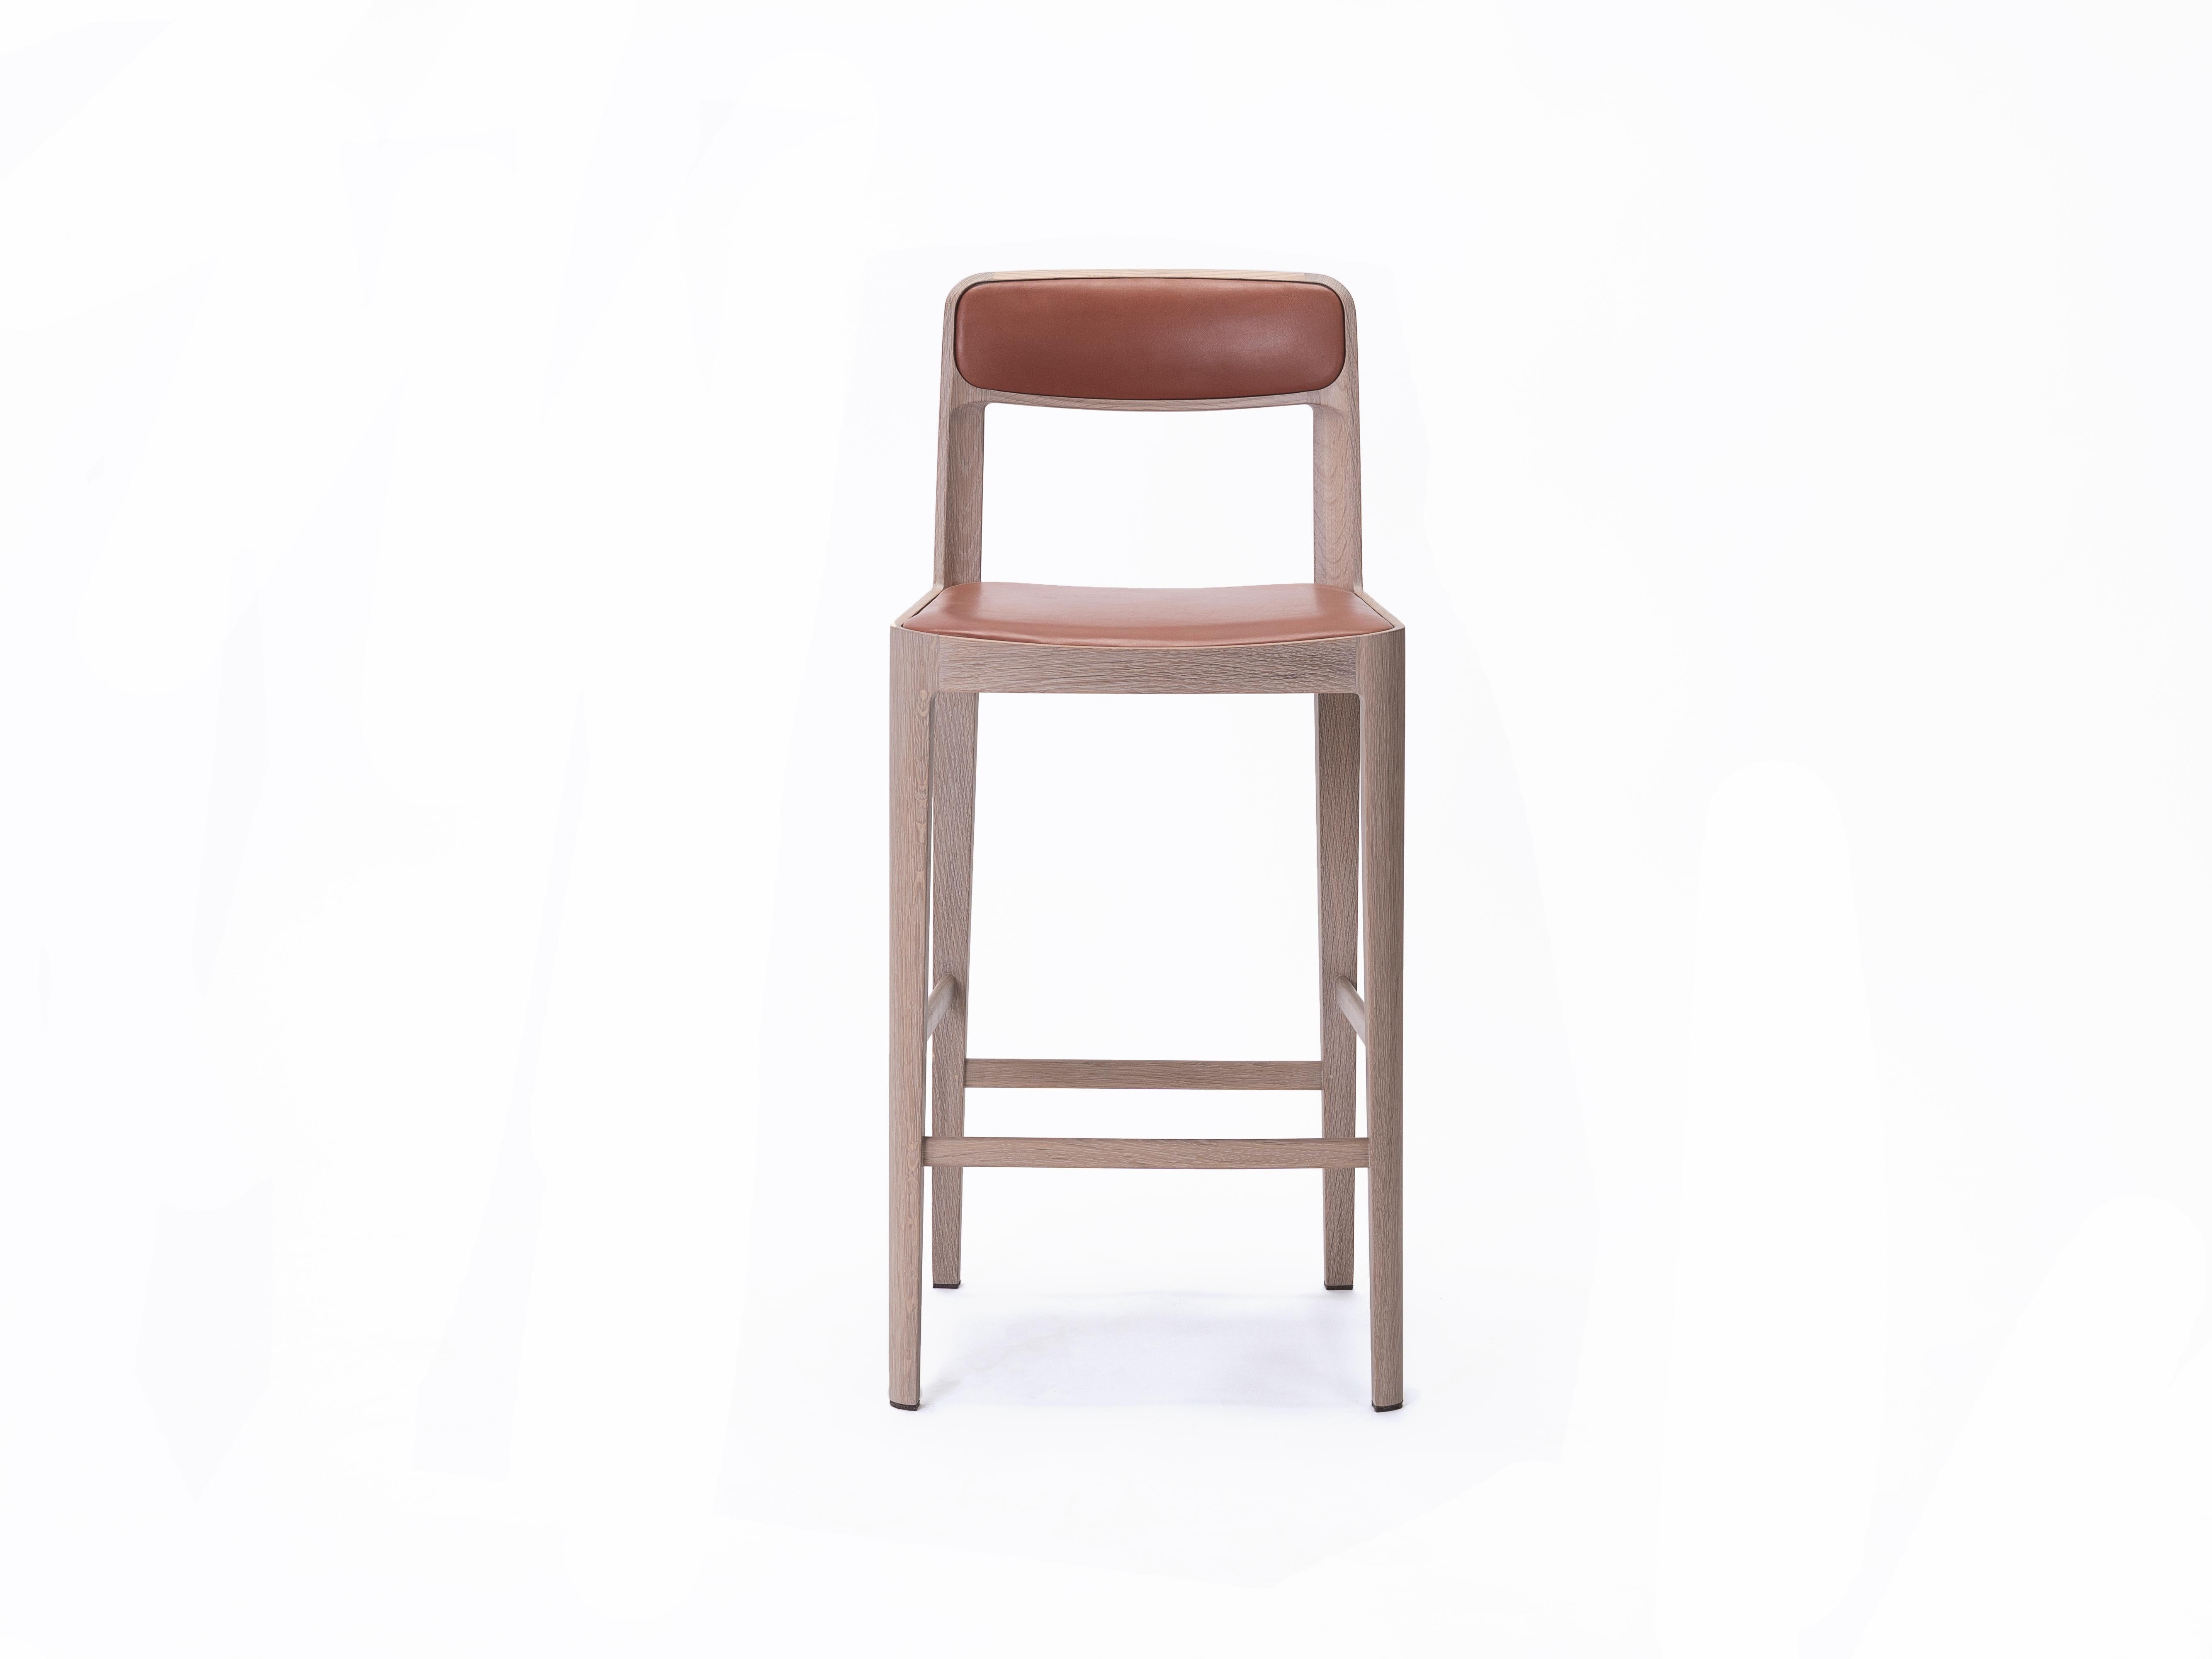 Unsere linea-Sitzmöbelkollektion ist Ausdruck einer Hingabe an Leichtigkeit und Materialkompetenz. Eine gewundene Struktur mit eleganten Proportionen, zurückhaltend und doch reich an zarten Details. 

Linea ist sowohl in Bar- als auch in